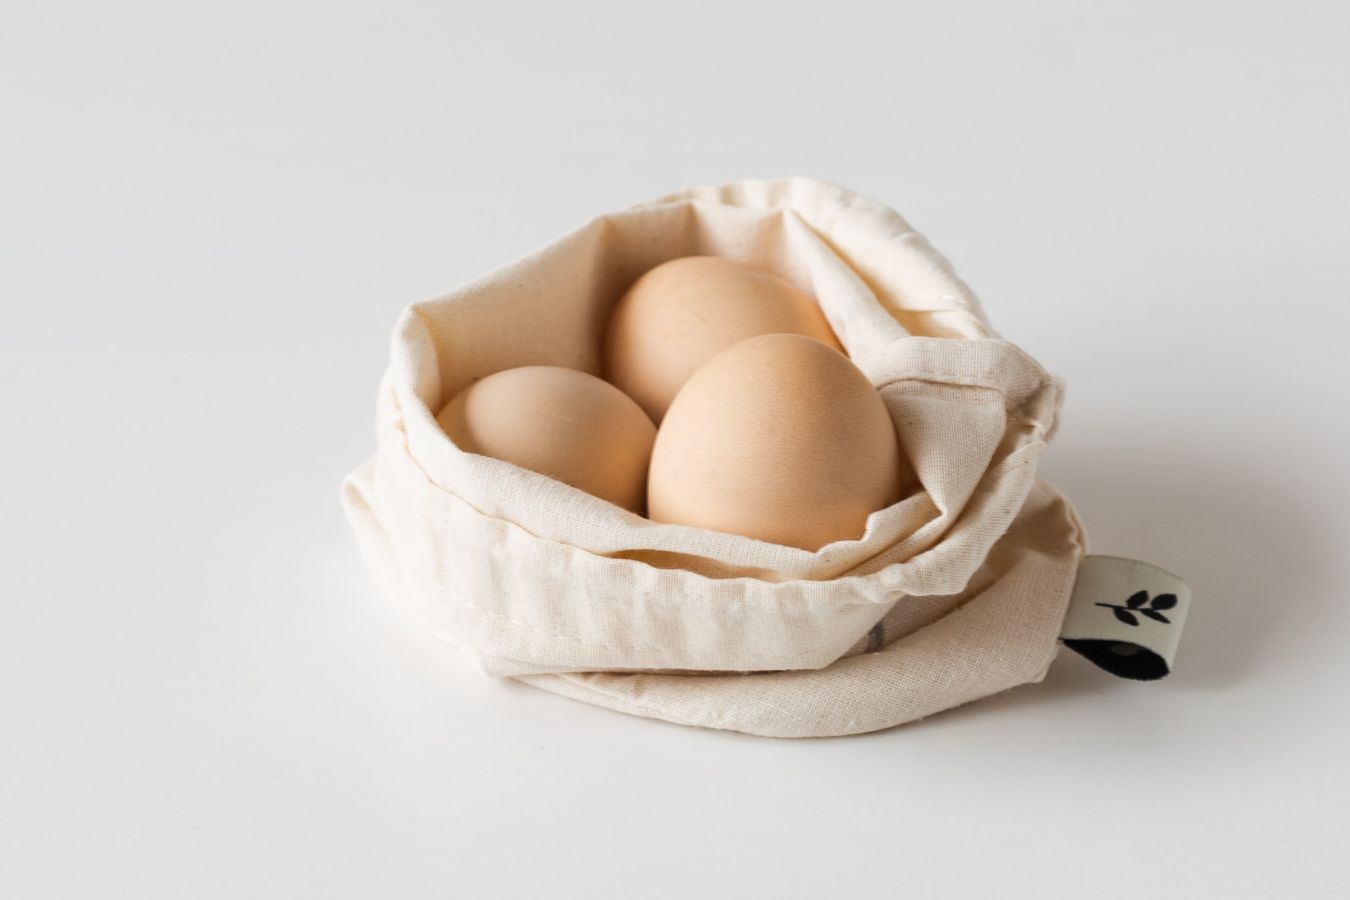 Польза и вред куриного яйца, сколько яиц можно есть в день, рацион питания  с куриными яйцами - Чемпионат